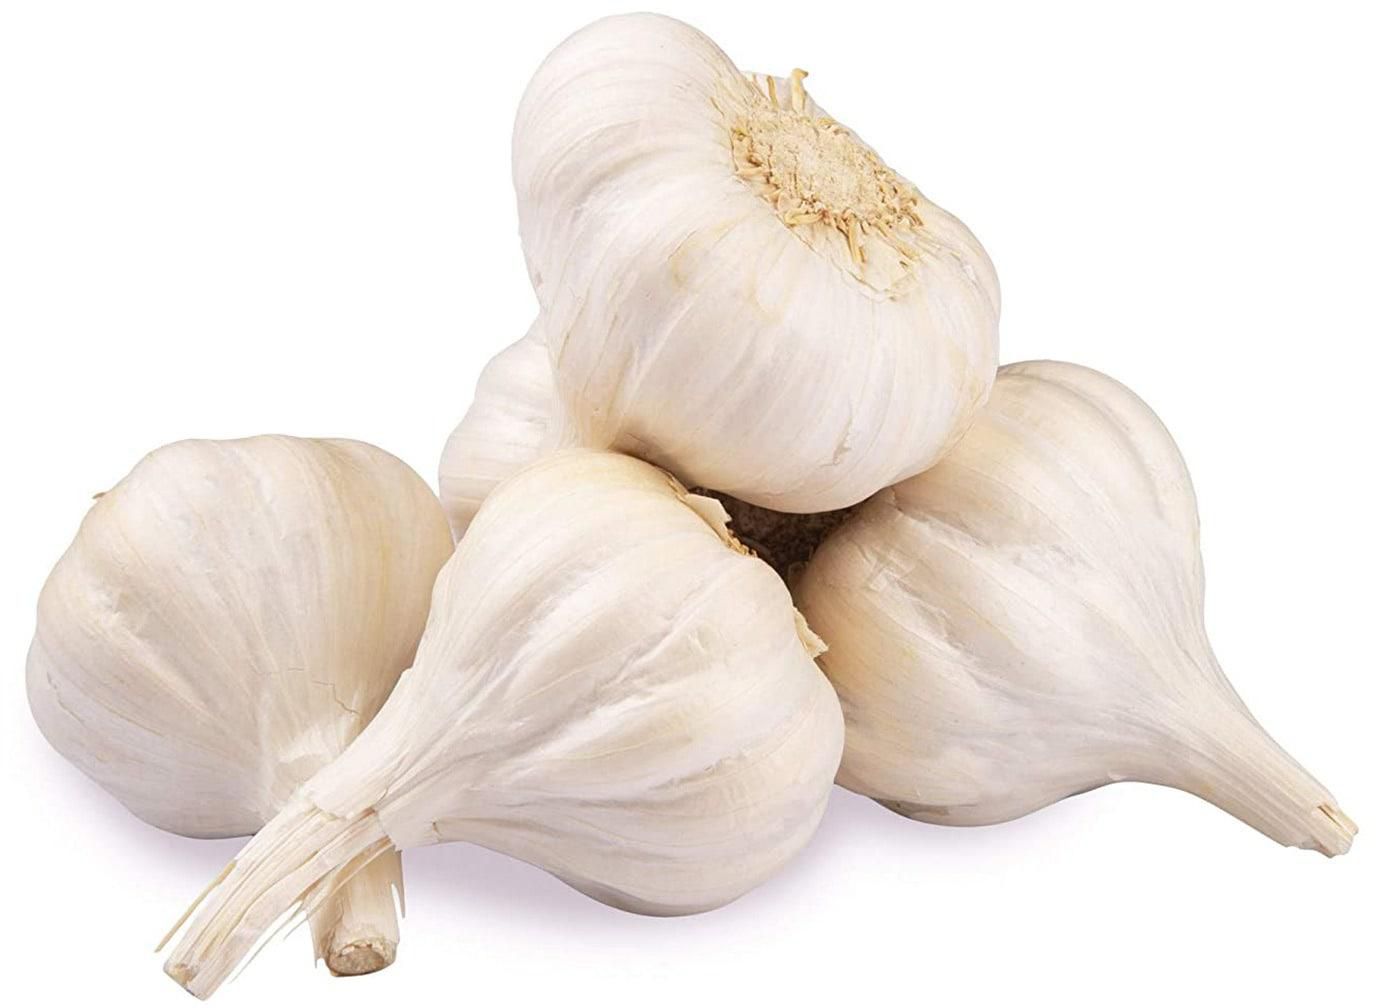 Balady White Garlic